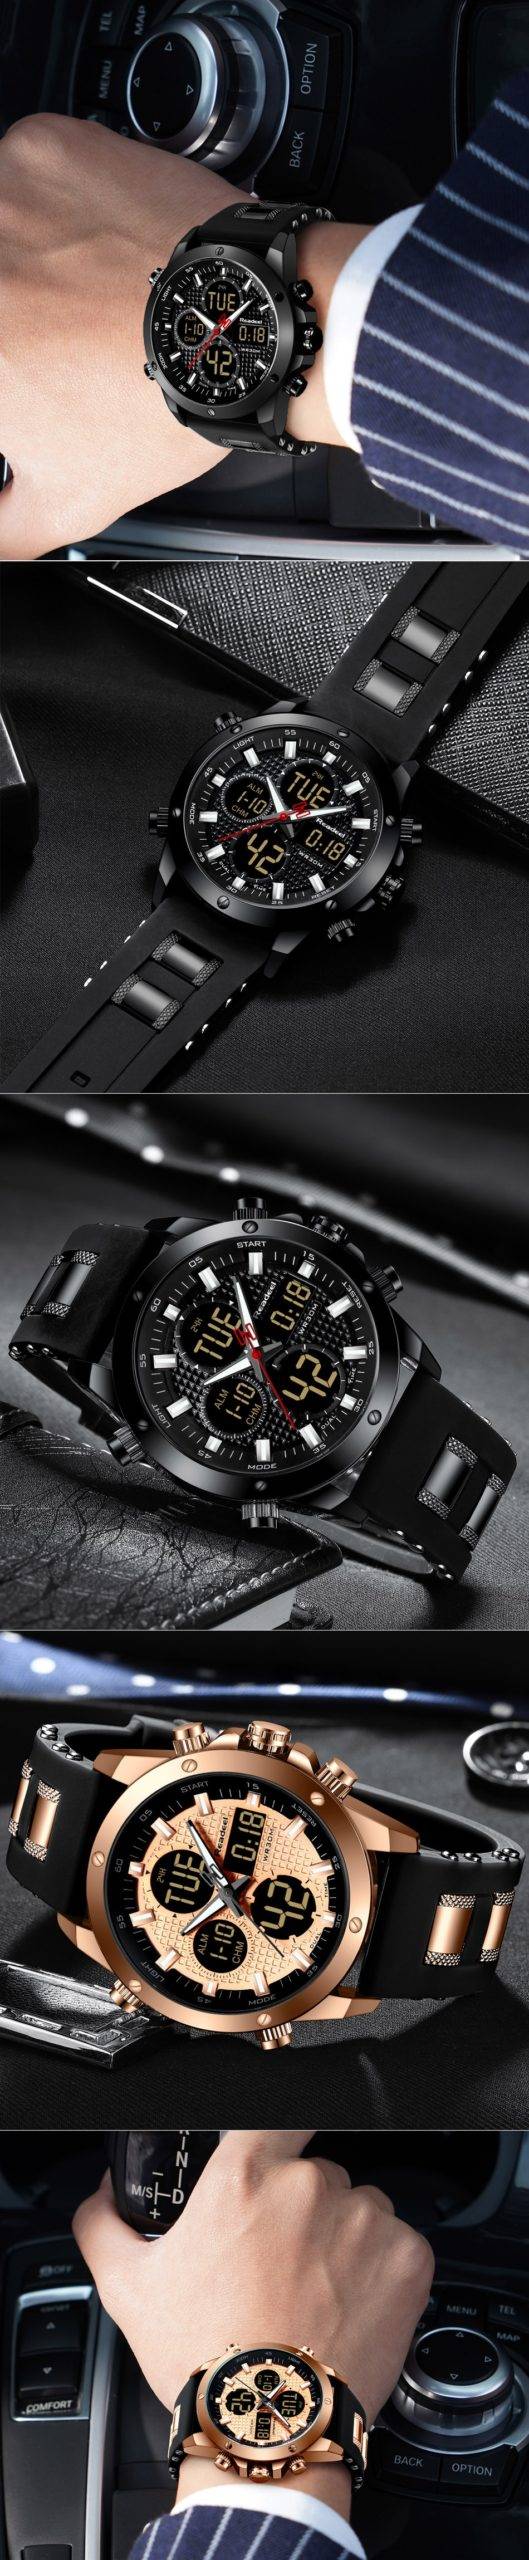 Montres hommes Top marque de luxe chronographe or hommes montre Quatz numérique montre LED de sport hommes homme horloge homme étanche montre-bracelet